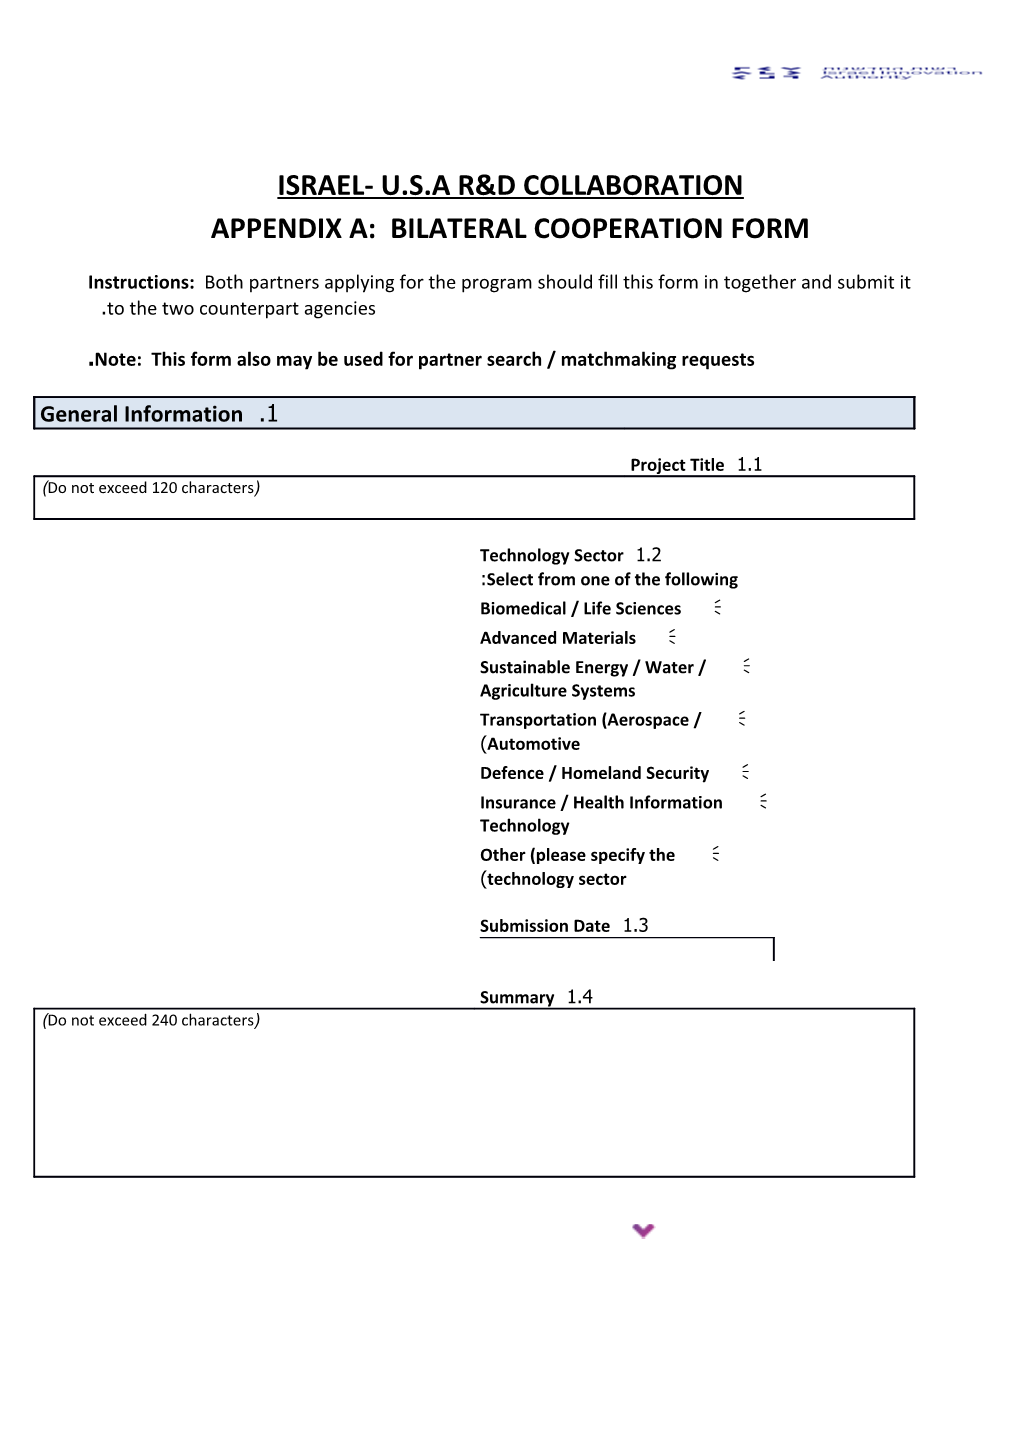 Appendix A: Bilateral Cooperation Form